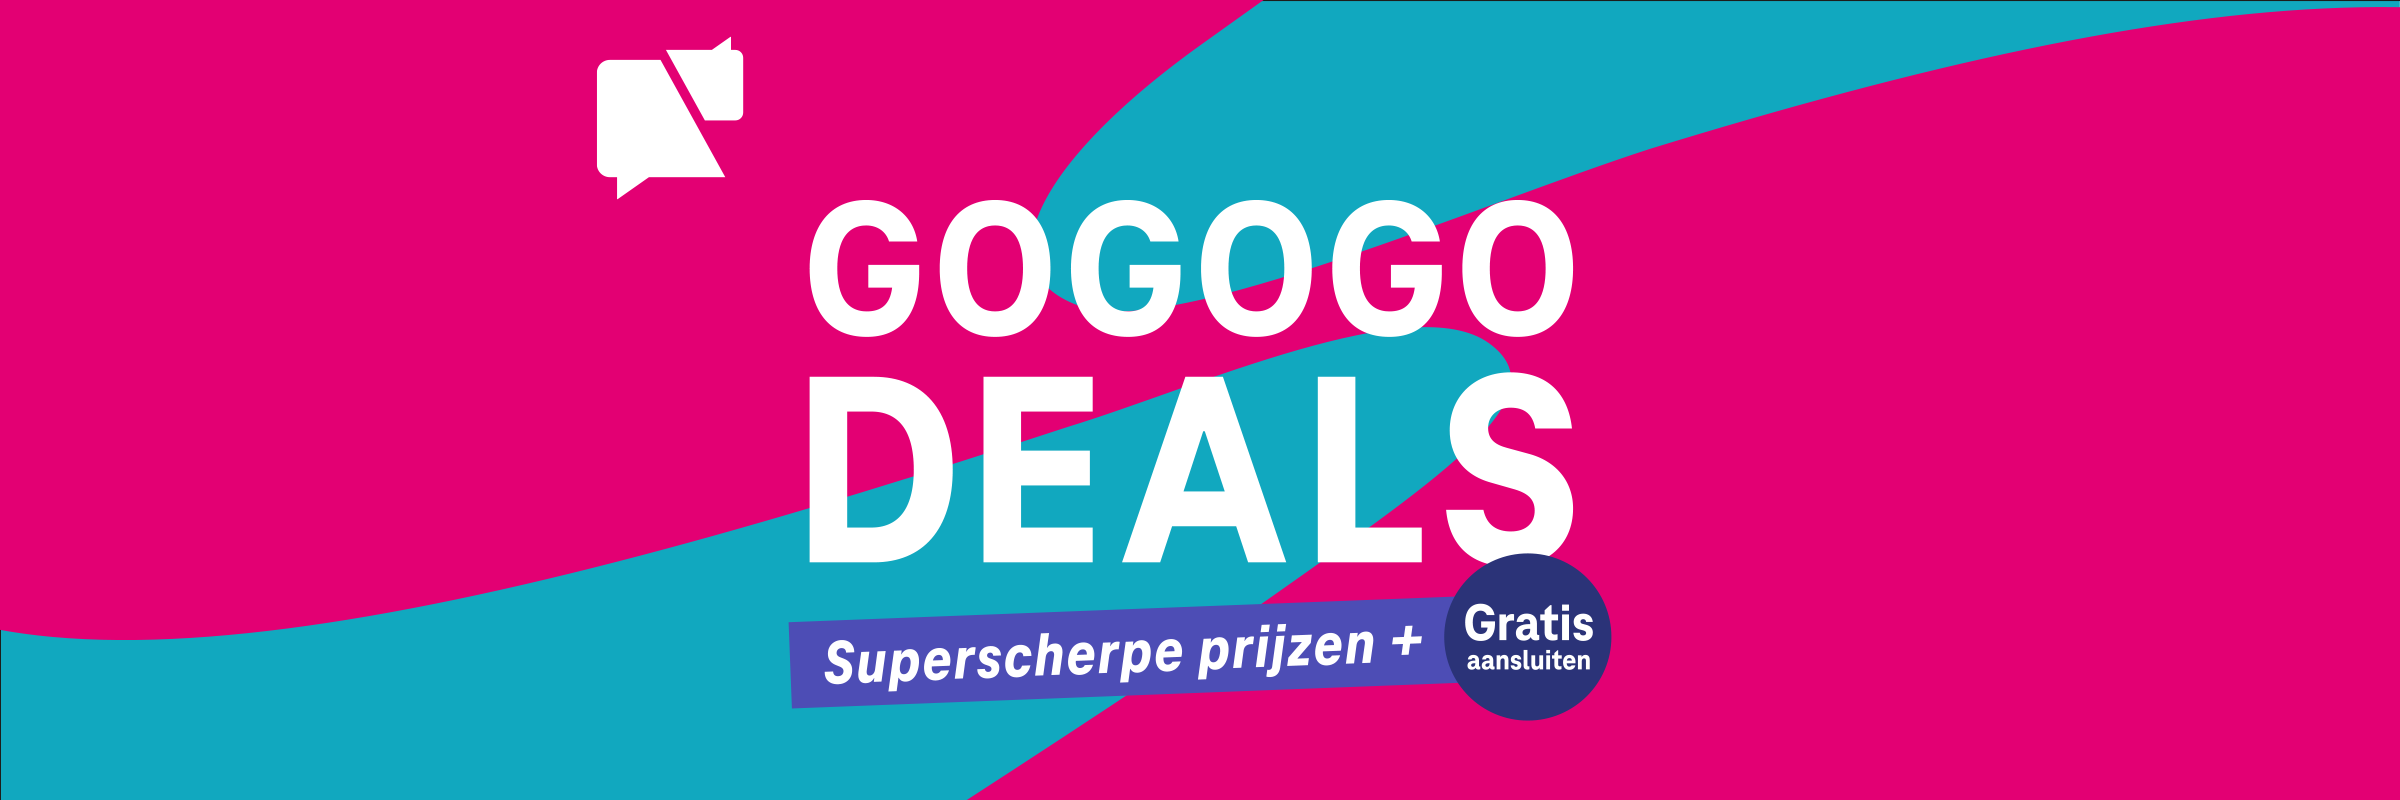 TMobile GOGOGO DEALS de beste deals voor superscherpe prijzen!